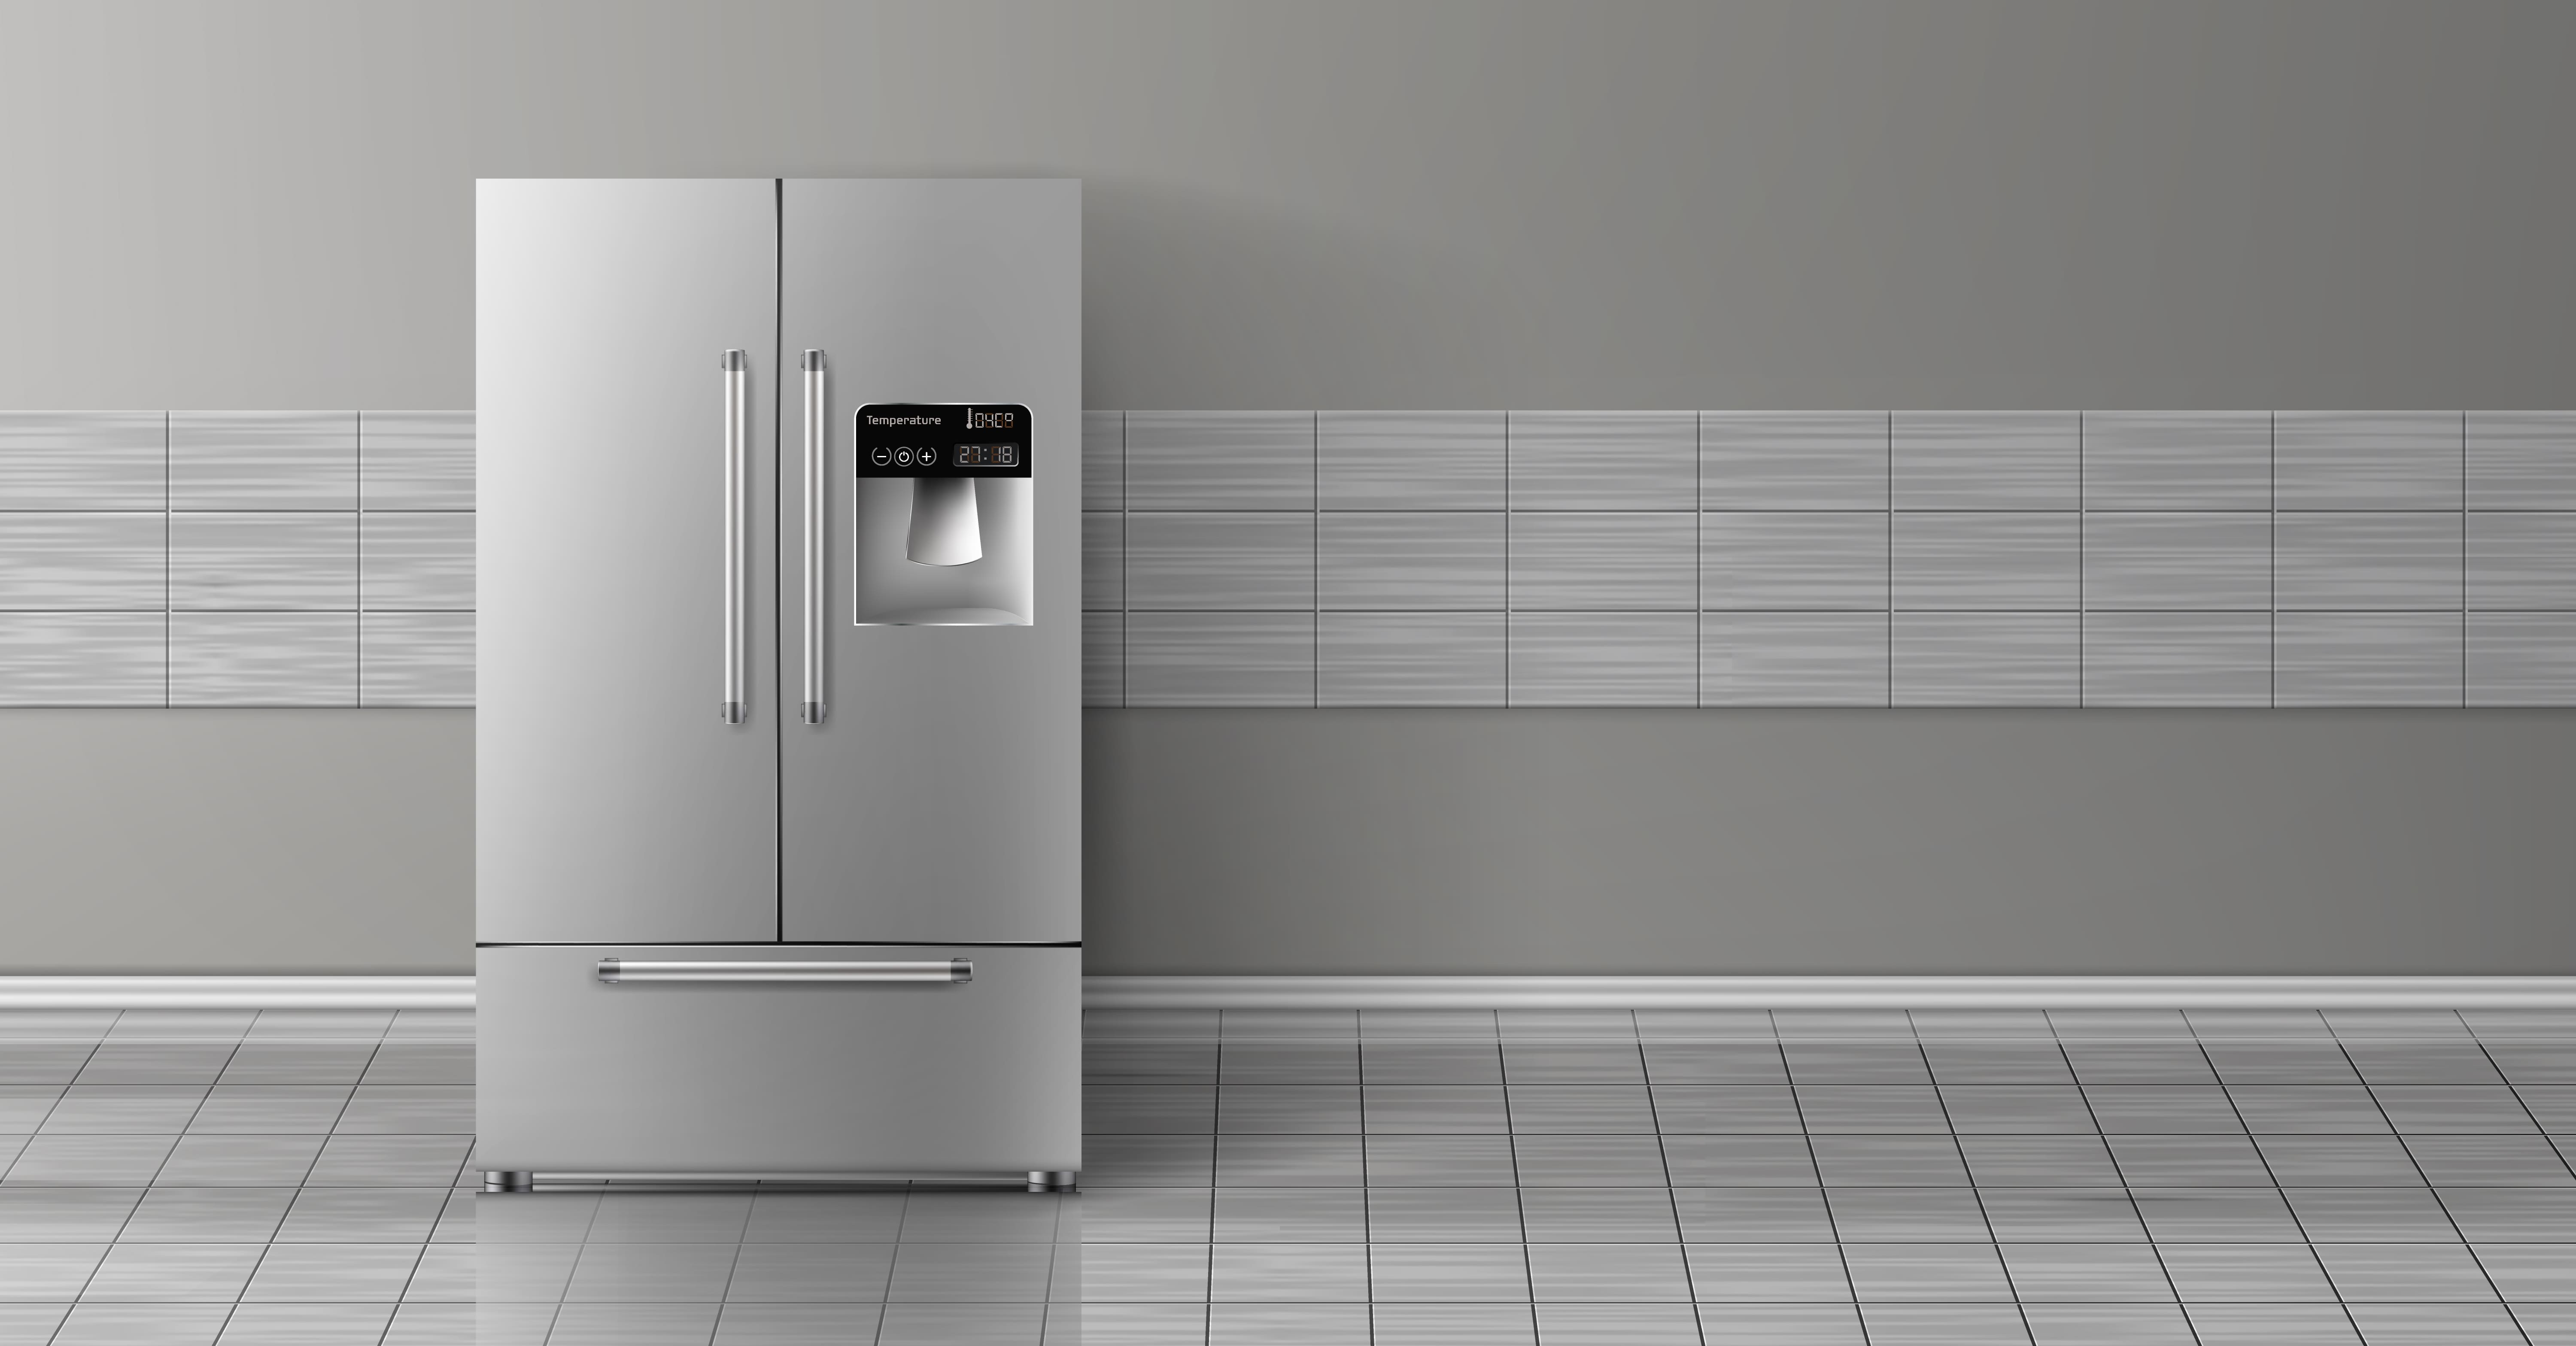 Comment remplacer le filtre du purificateur d'eau de mon réfrigérateur?